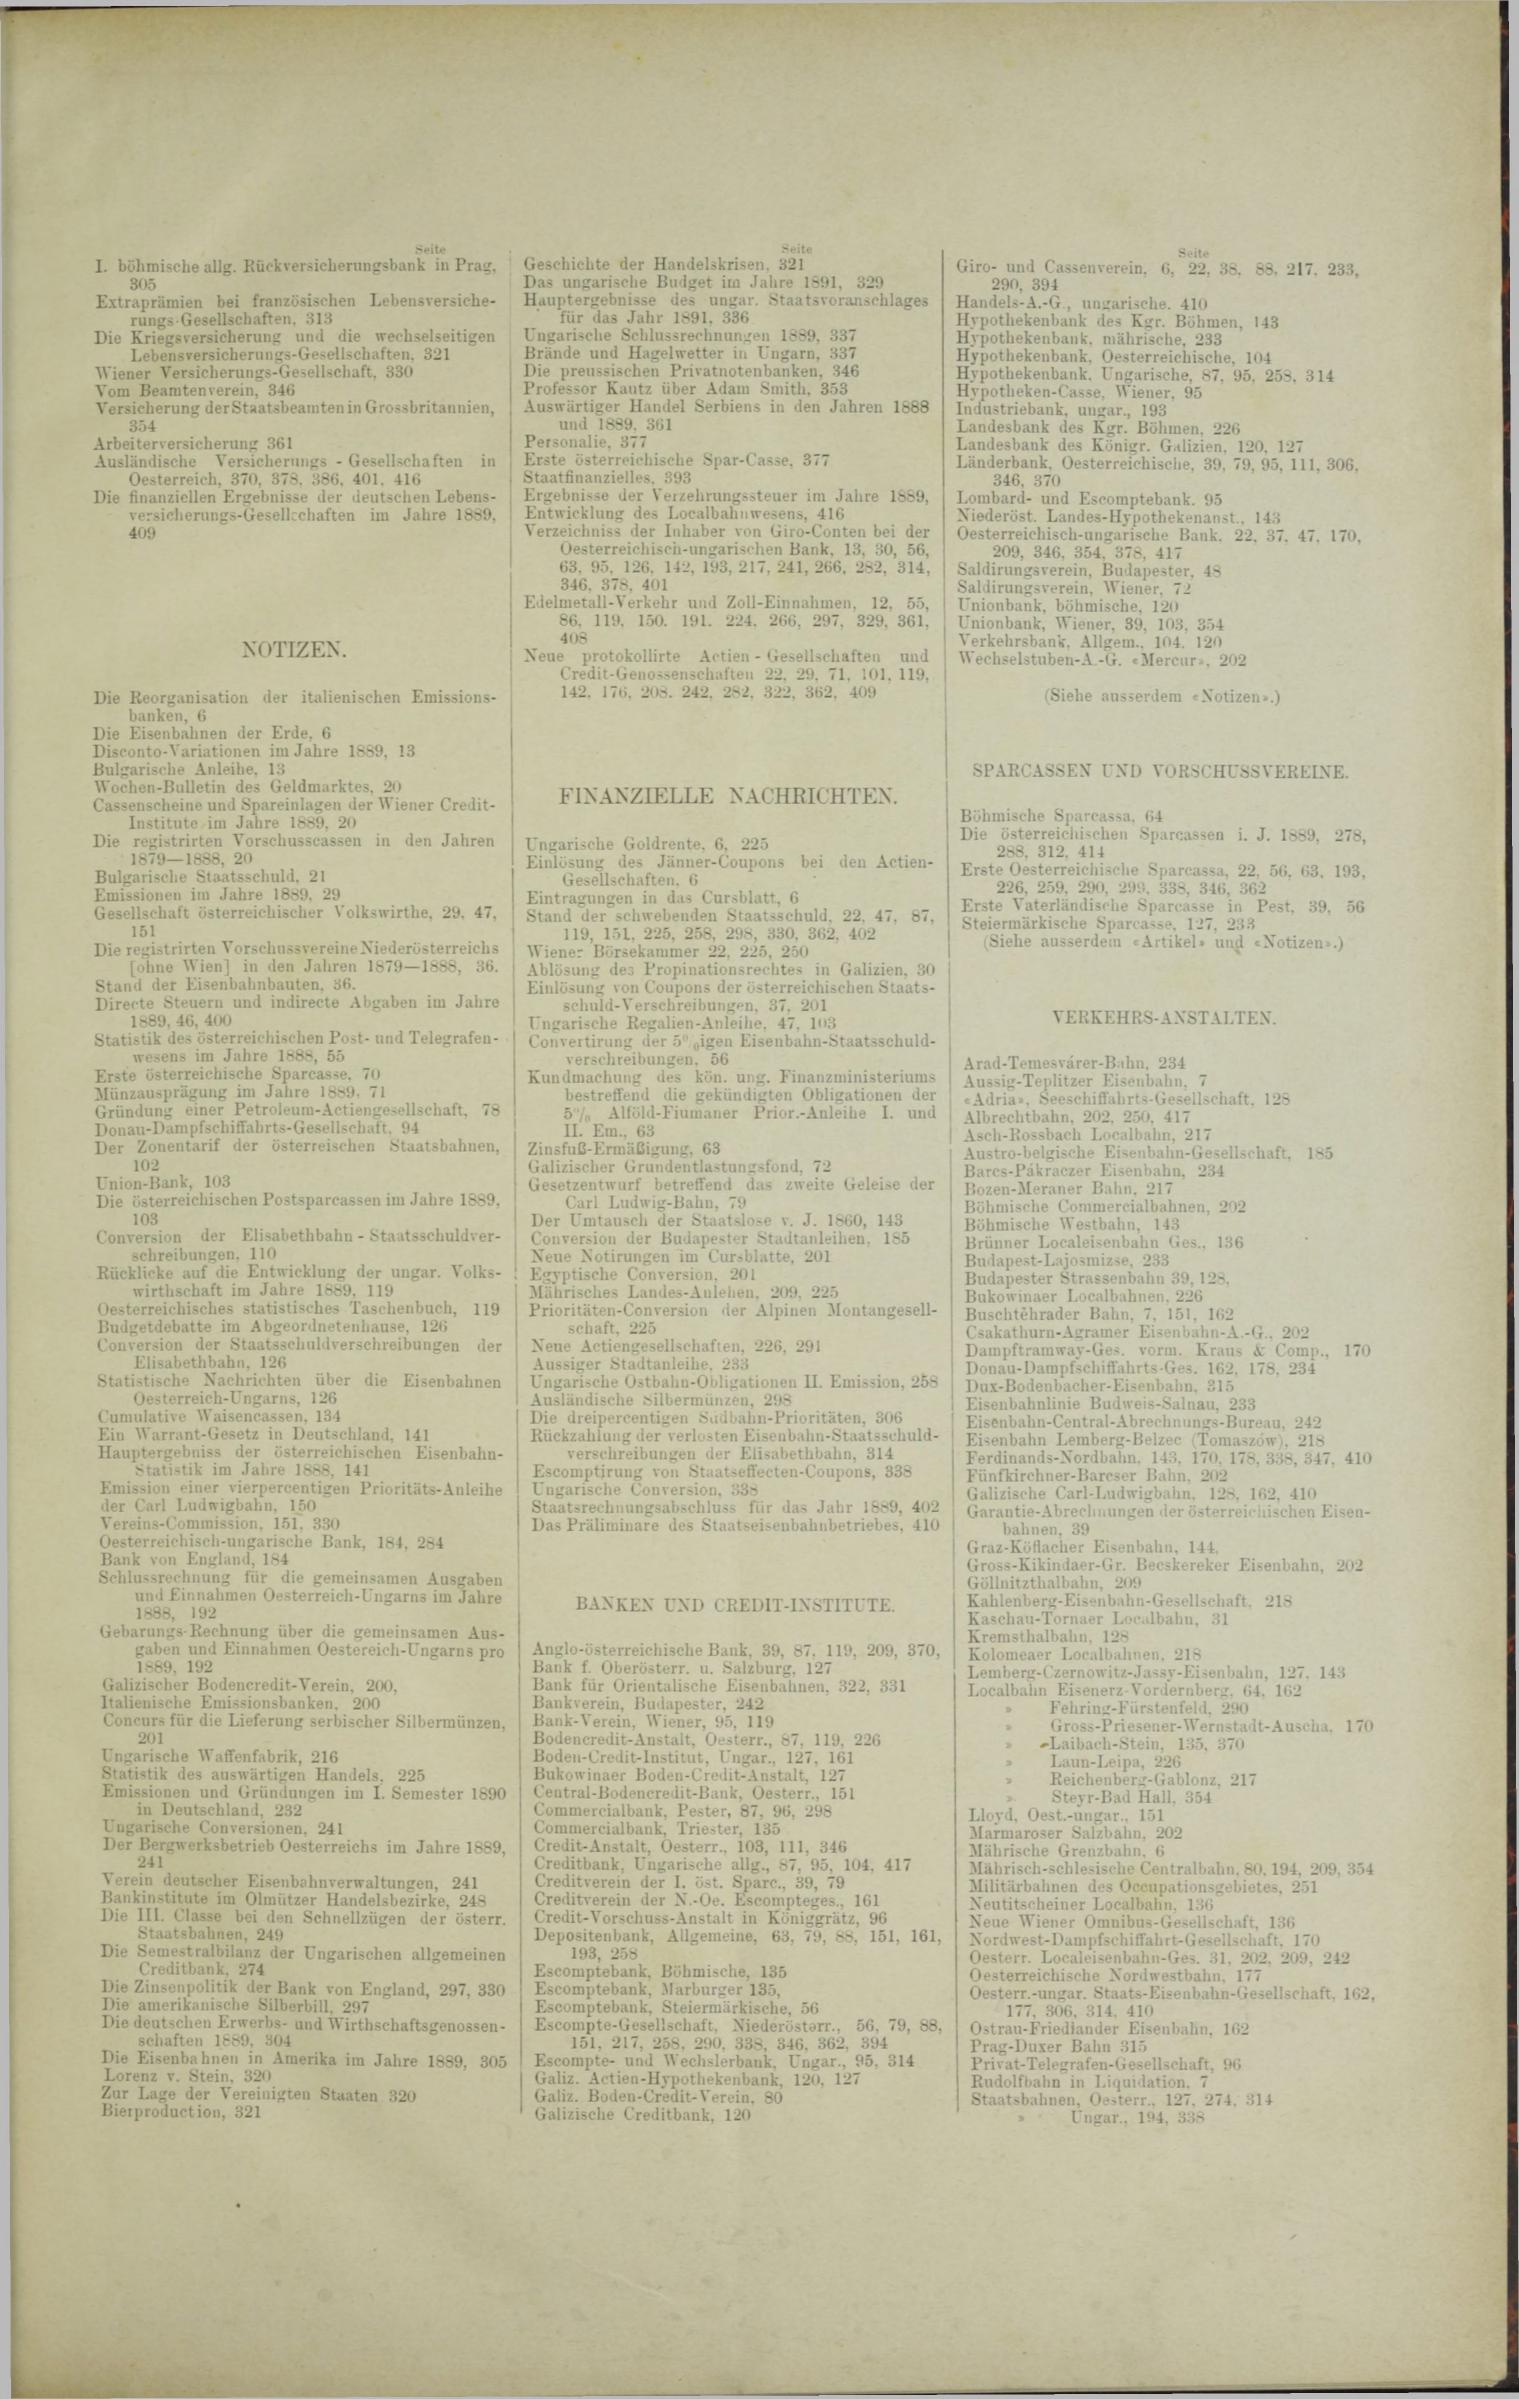 Der Tresor 08.05.1890 - Seite 13